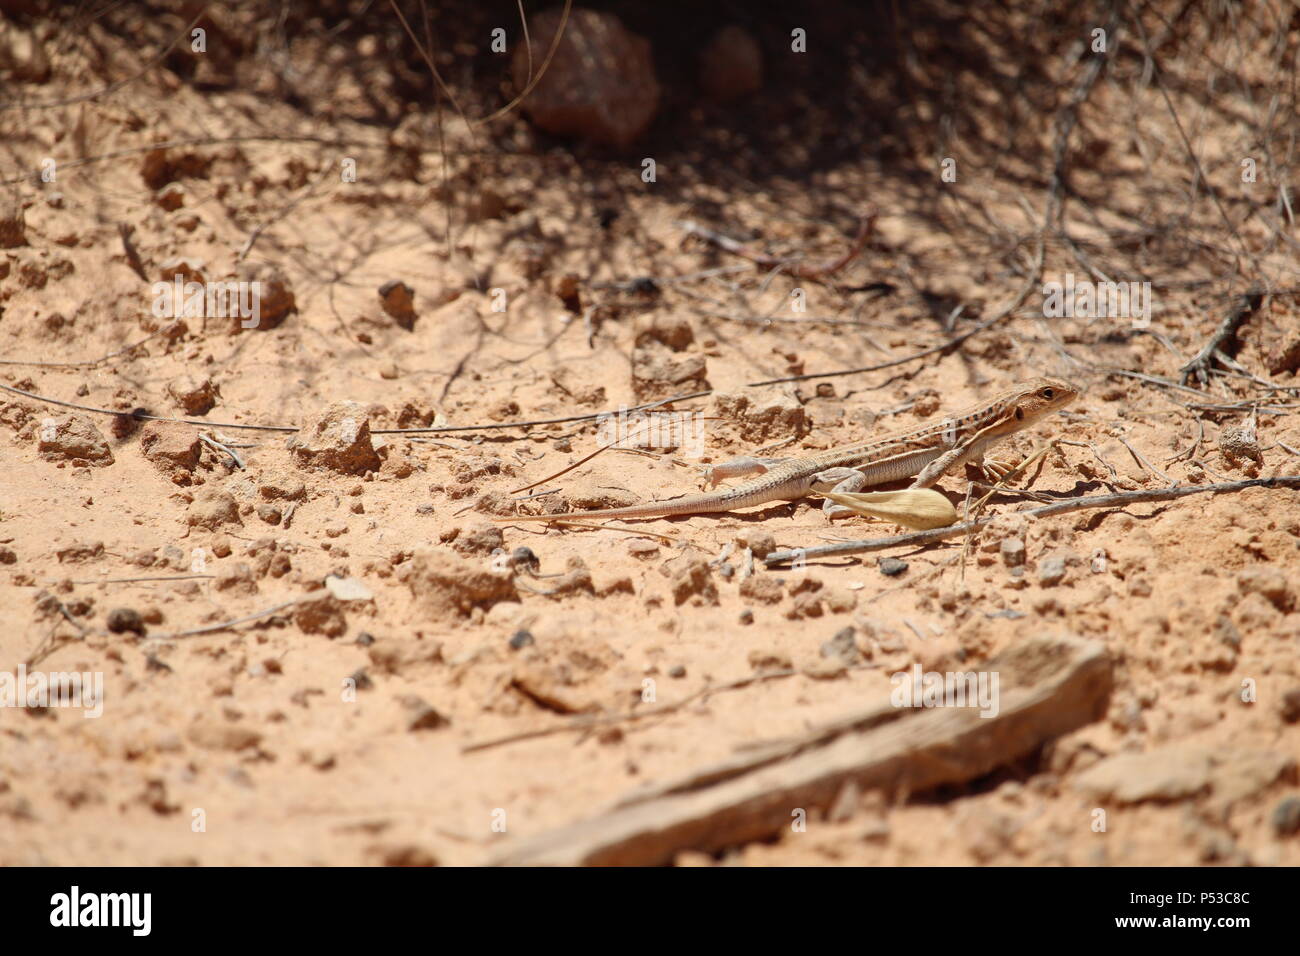 Fauna selvatica sulla Penisola Iberica, Spagna - Acanthodactylus erythrurus, spinoso footed lizard guizzanti per rifugio. Estate 2018. Foto Stock